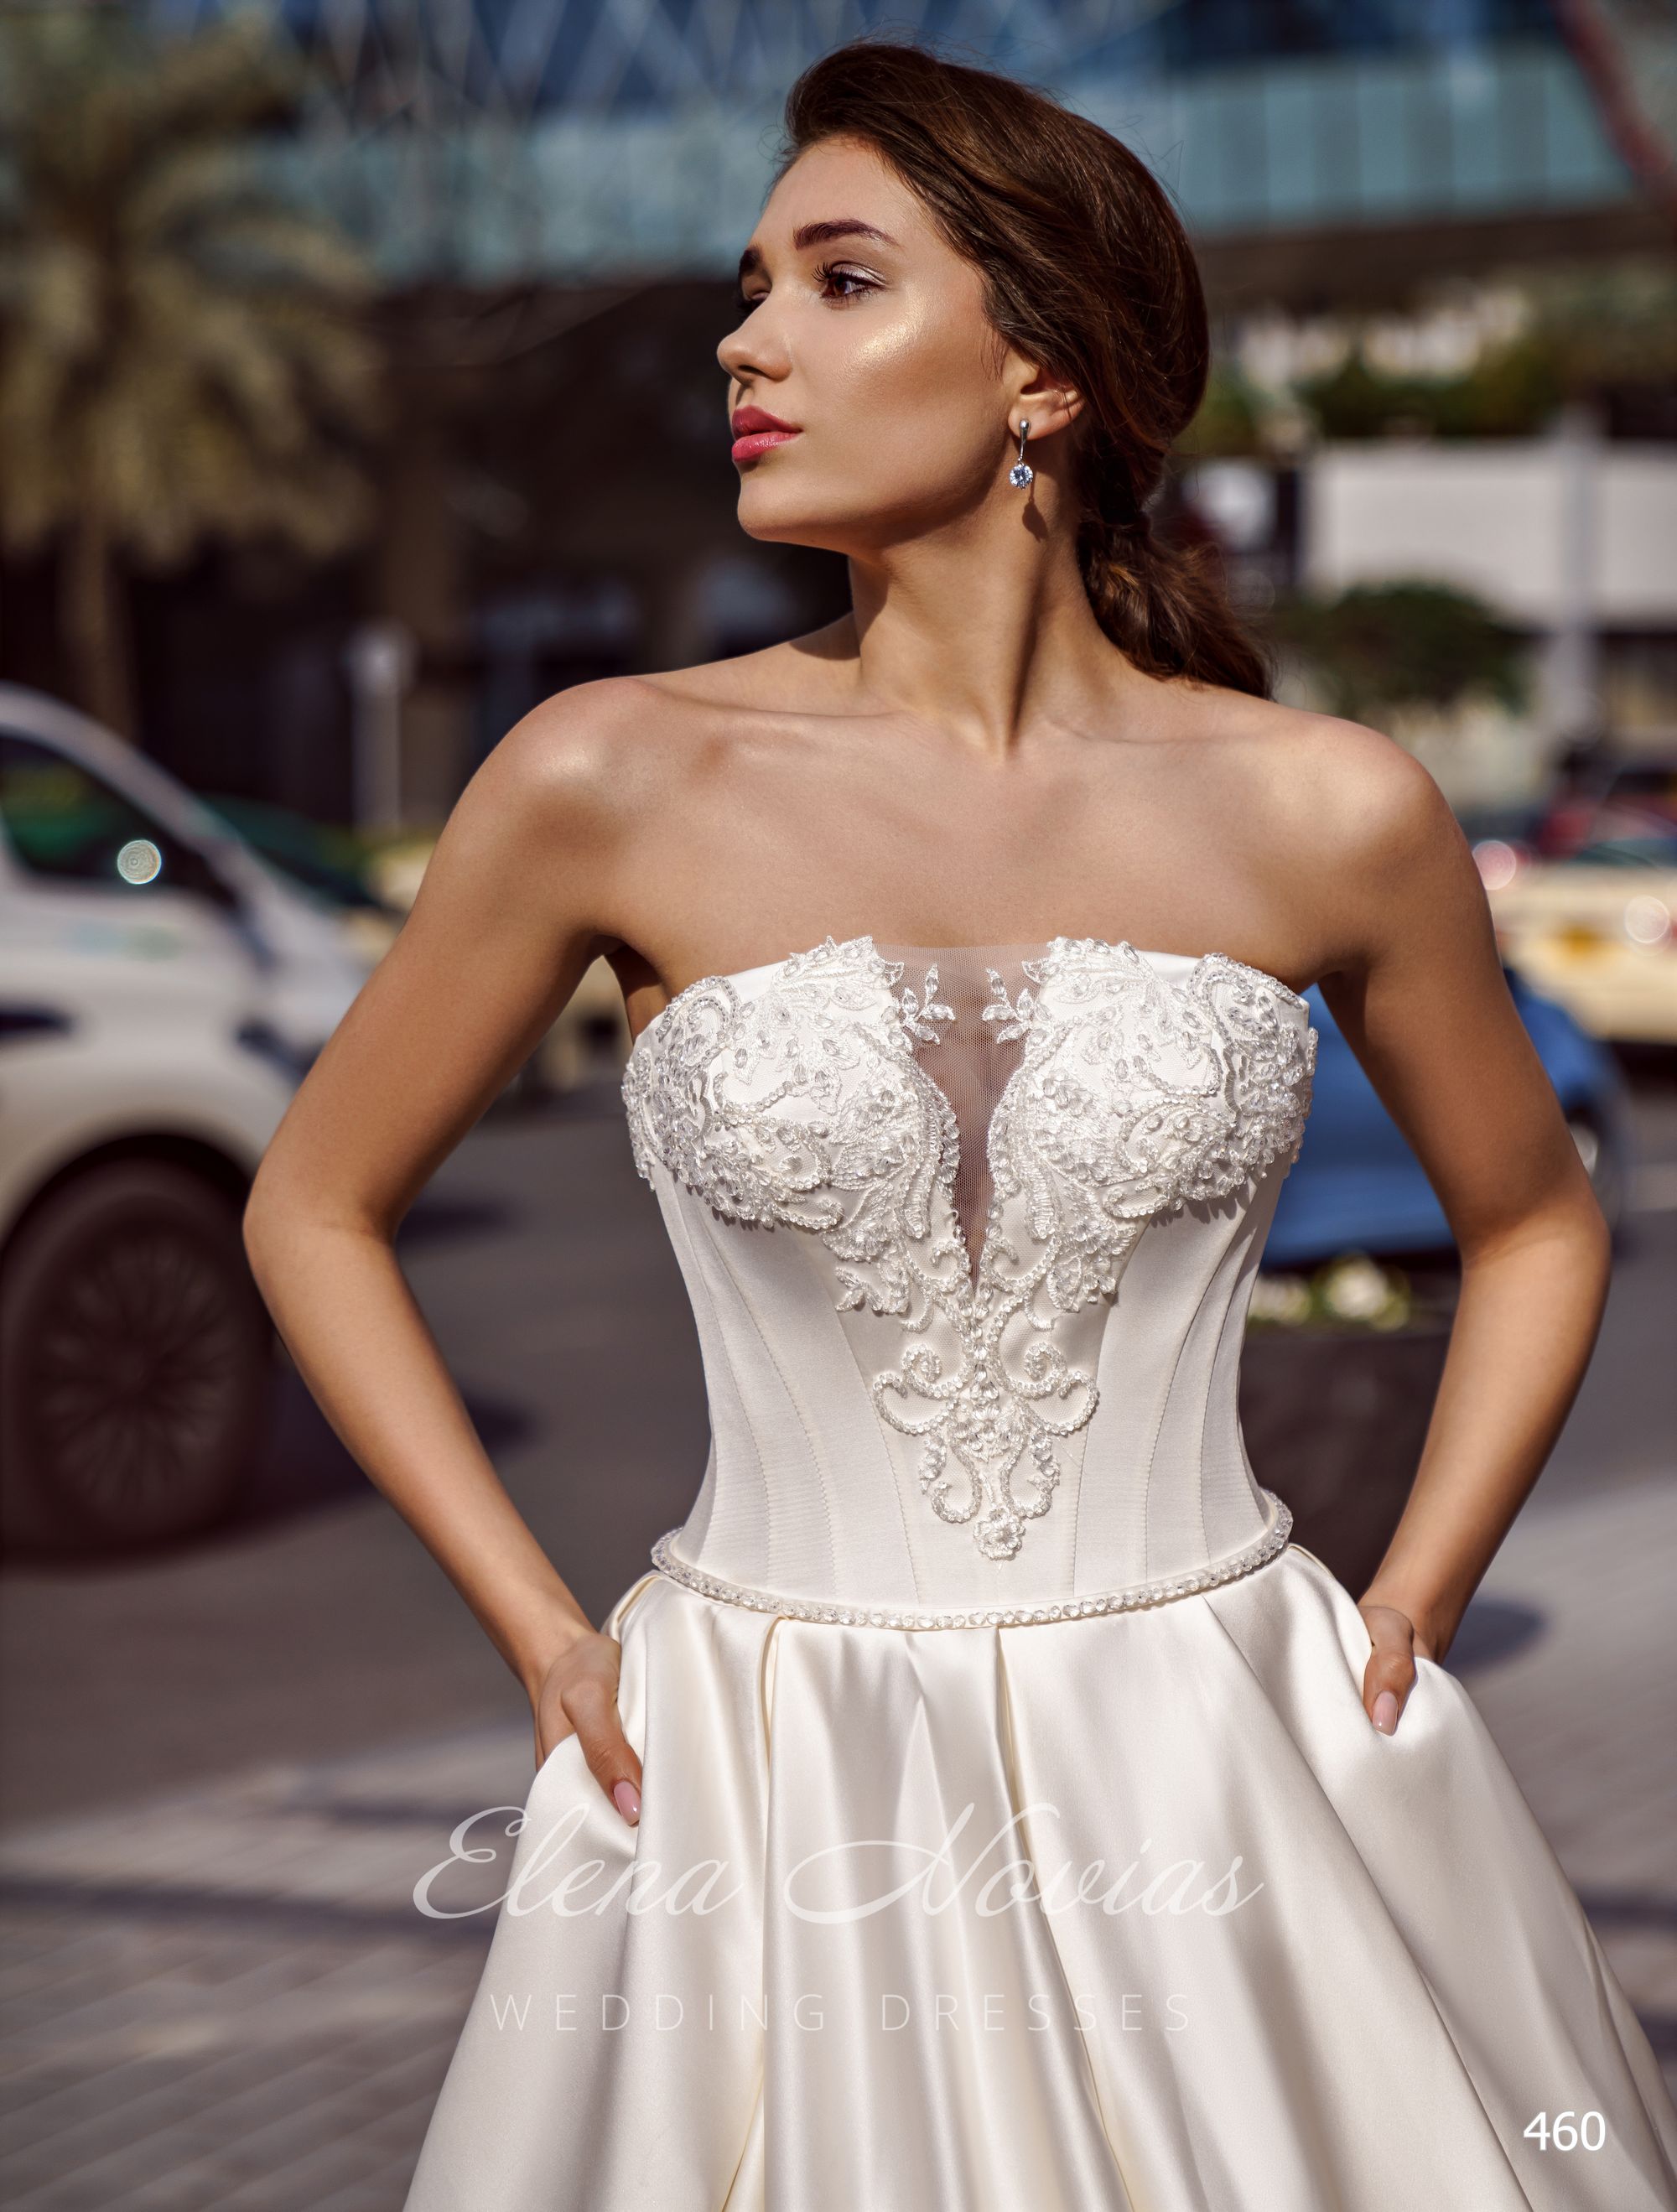 Шикарное атласное свадебное платье оптом от Elena Novias